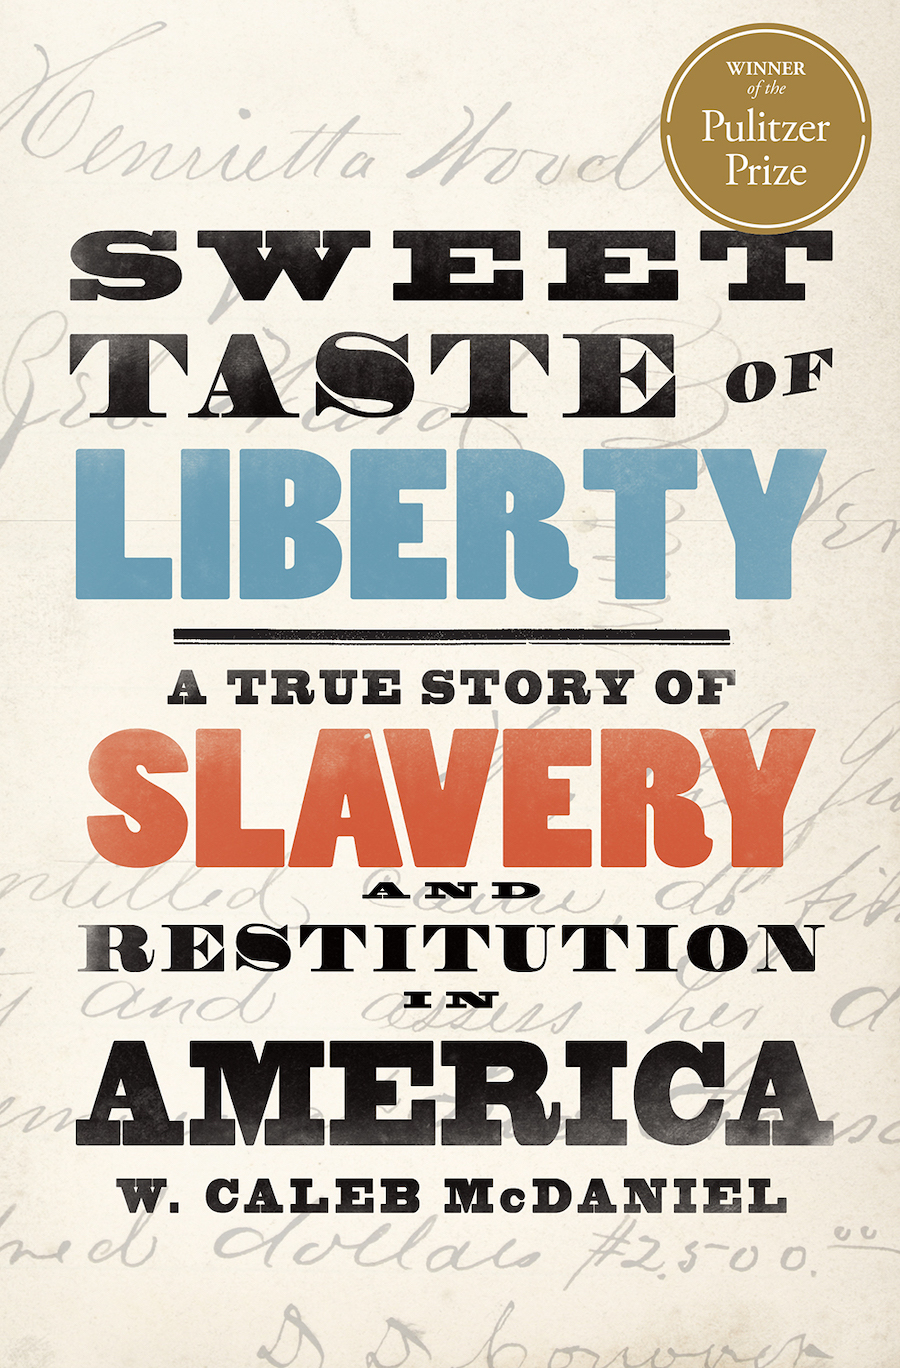 Cover art for "Sweet Taste of Liberty."